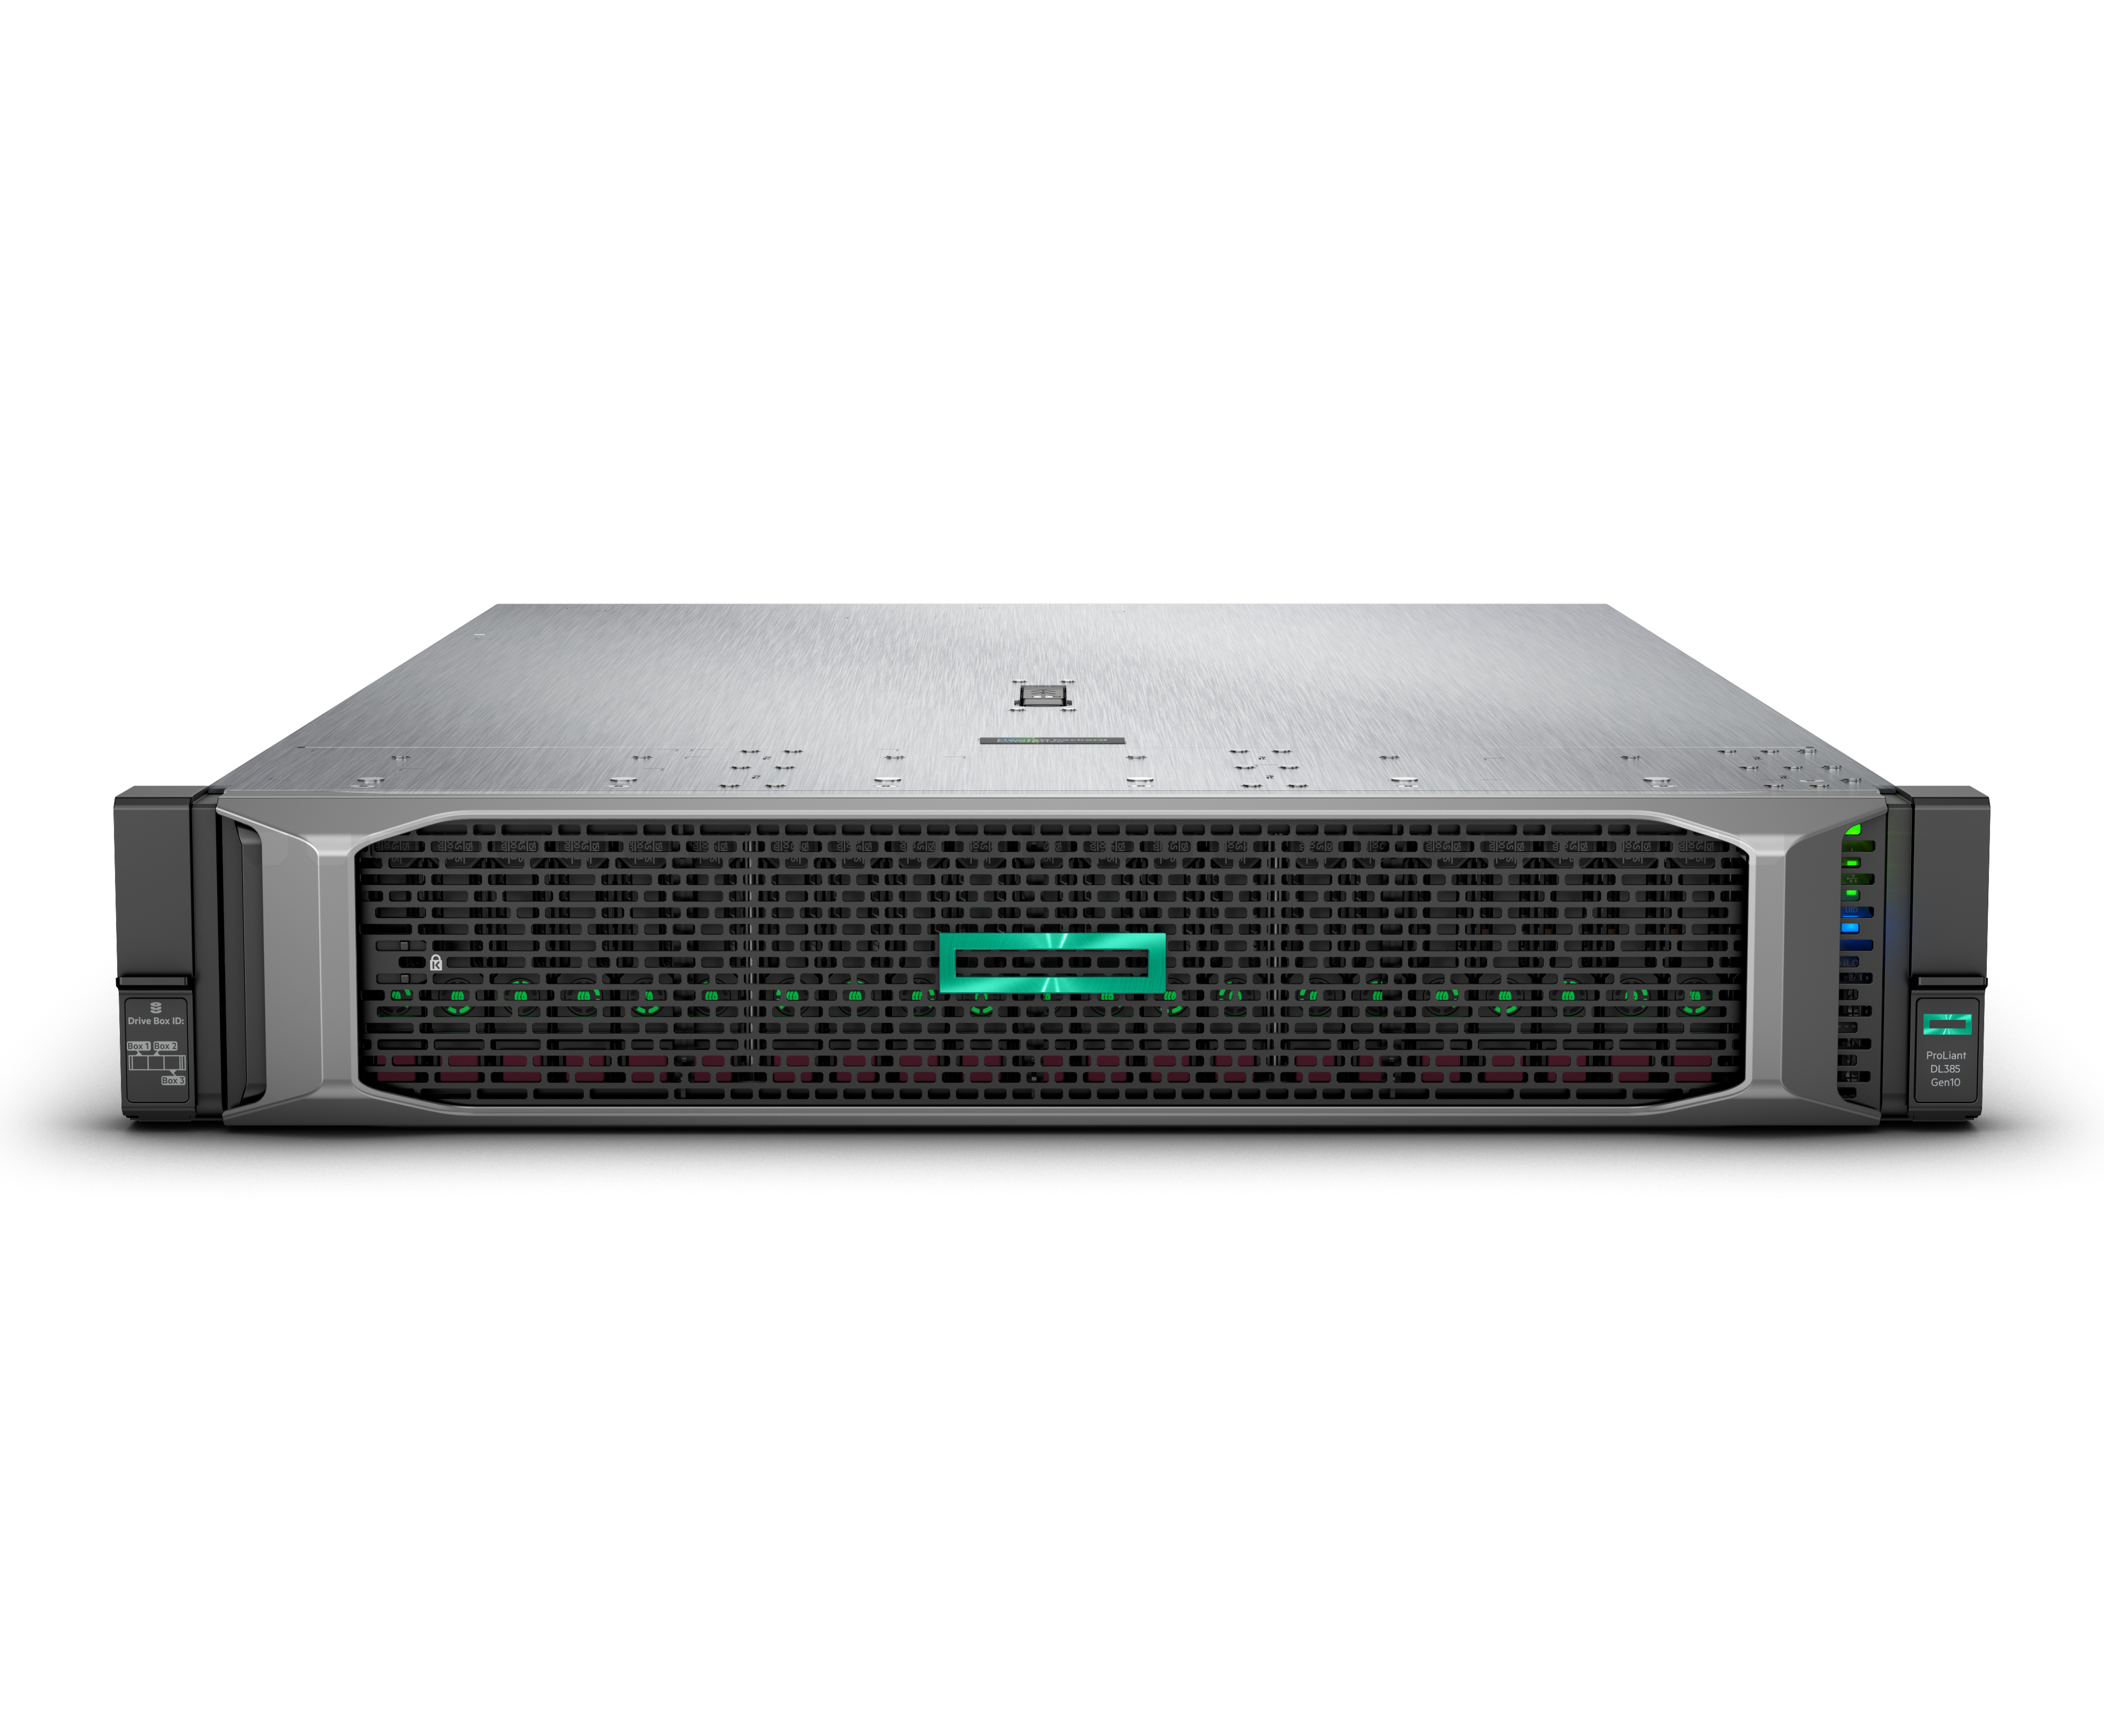 Процесор AMD EPYC™ забезпечує високі показники продуктивності сервера HPE Gen10 згідно з тестами SPEC CPU®